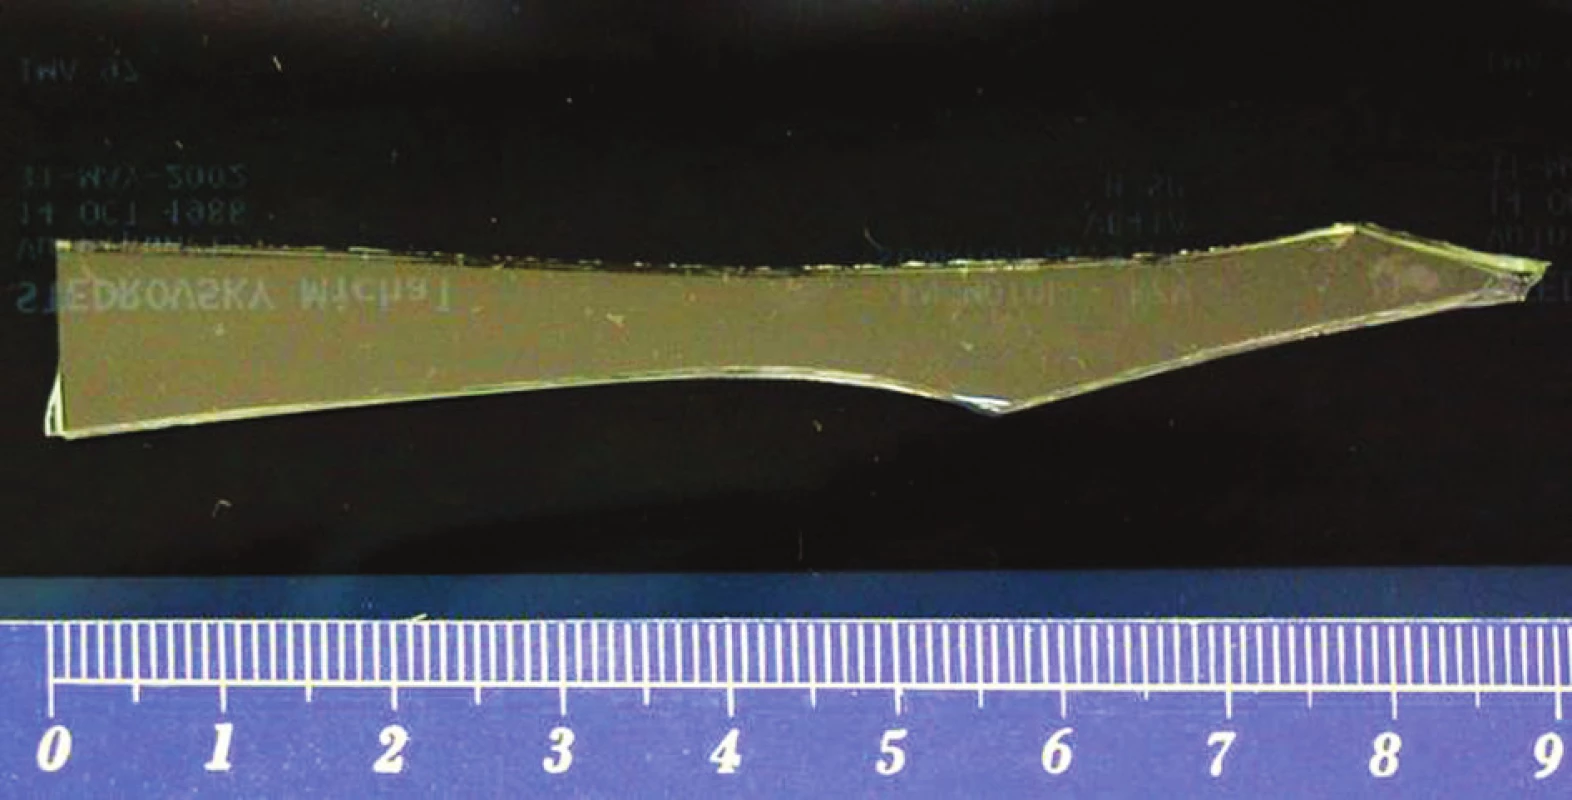 Odstraněný střep z jater velikosti 9 cm
Fig. 3: Removed glass fragment from liver, size of fragment 9cm